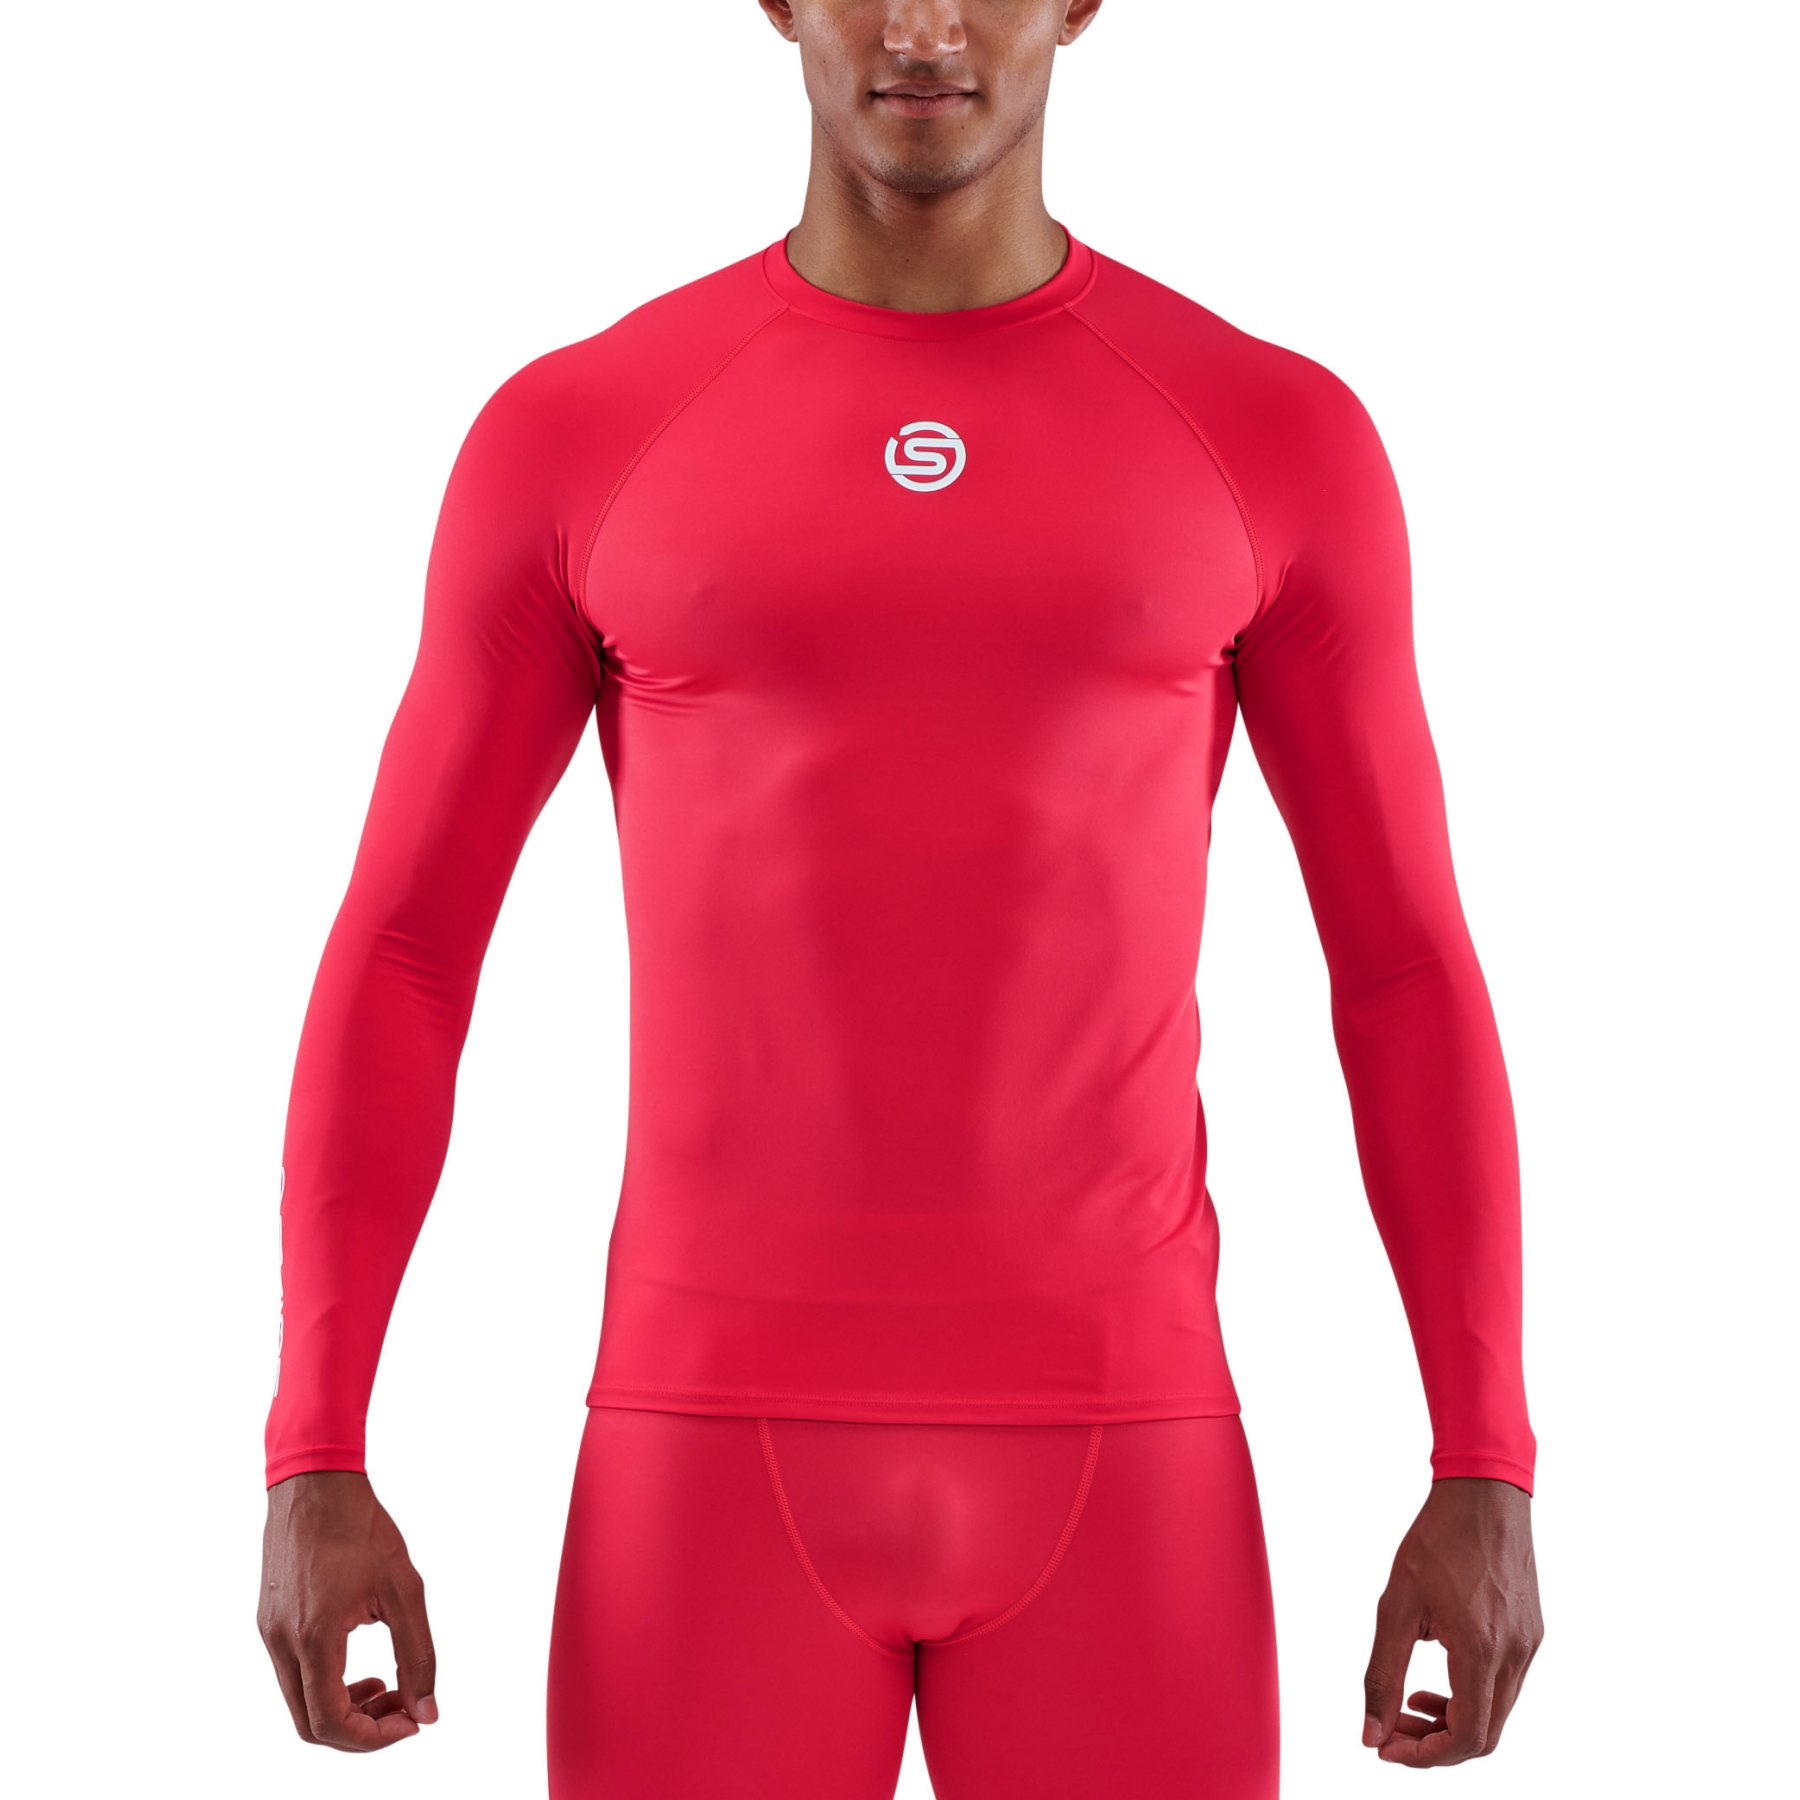 Produktbild von SKINS 1-Series Langarm-Shirt - Rot